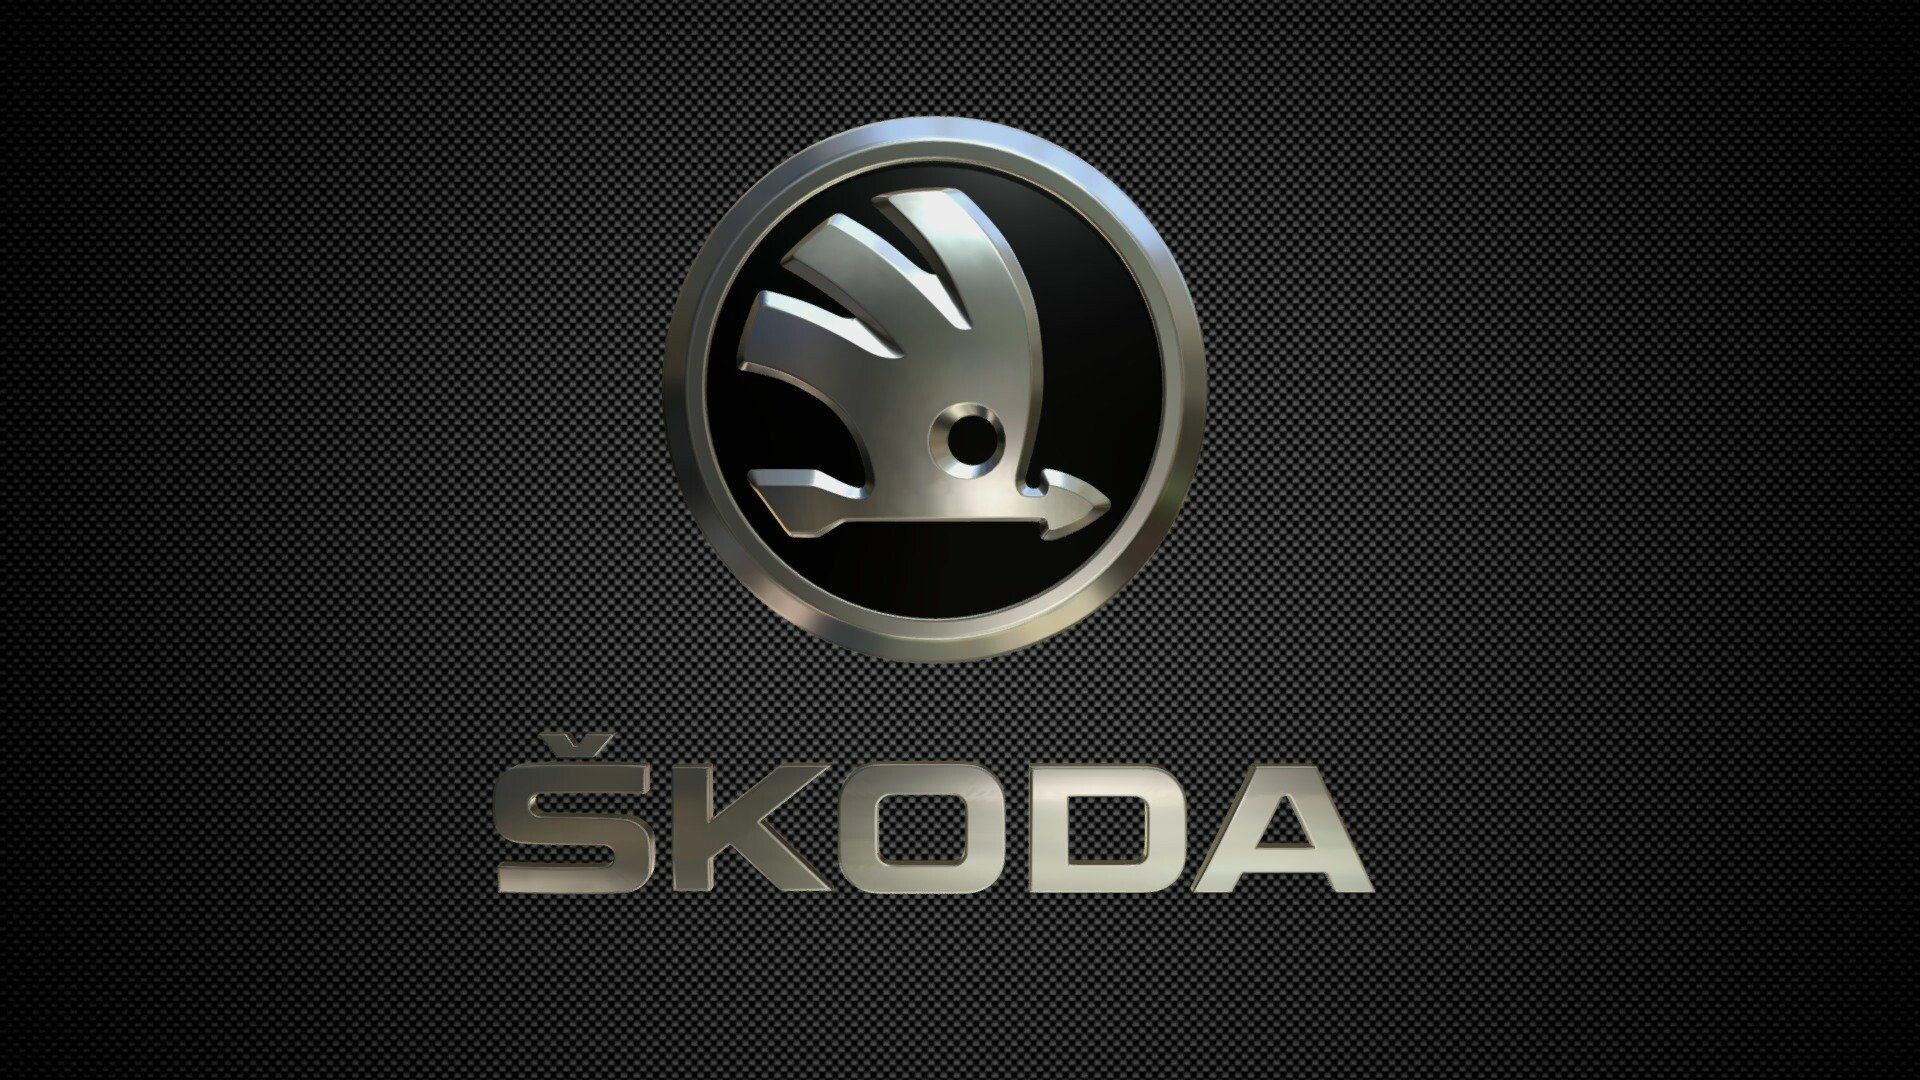 Skoda: Brand Logo, A Czech automobile manufacturer. 1920x1080 Full HD Wallpaper.